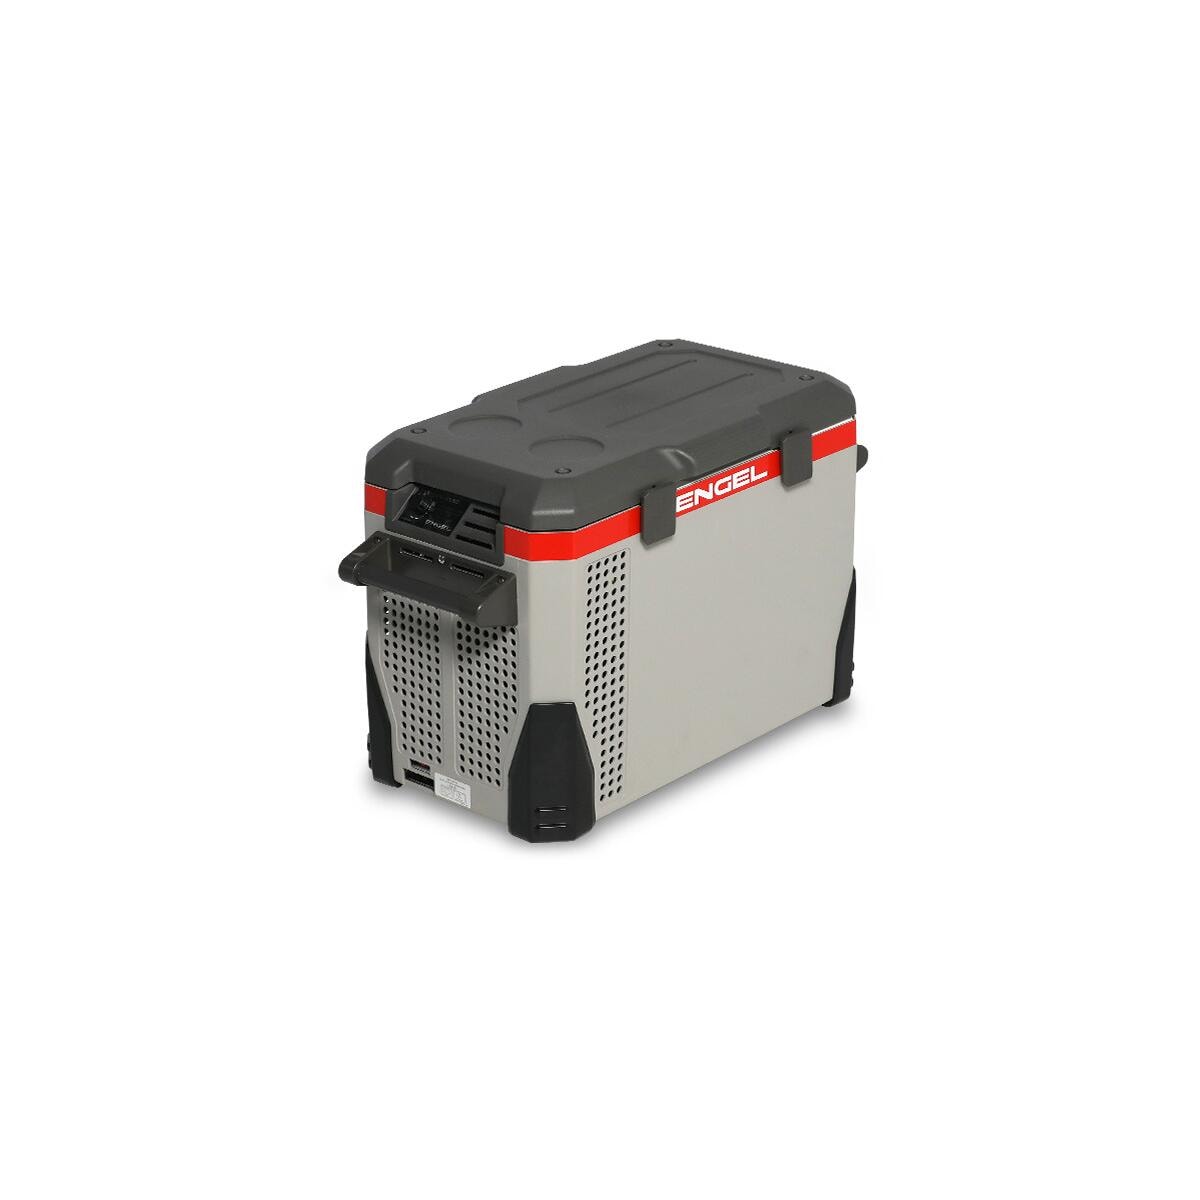 Der beste Camper Kühlschrank - Kompressor Kühlbox Auto 12V/230V